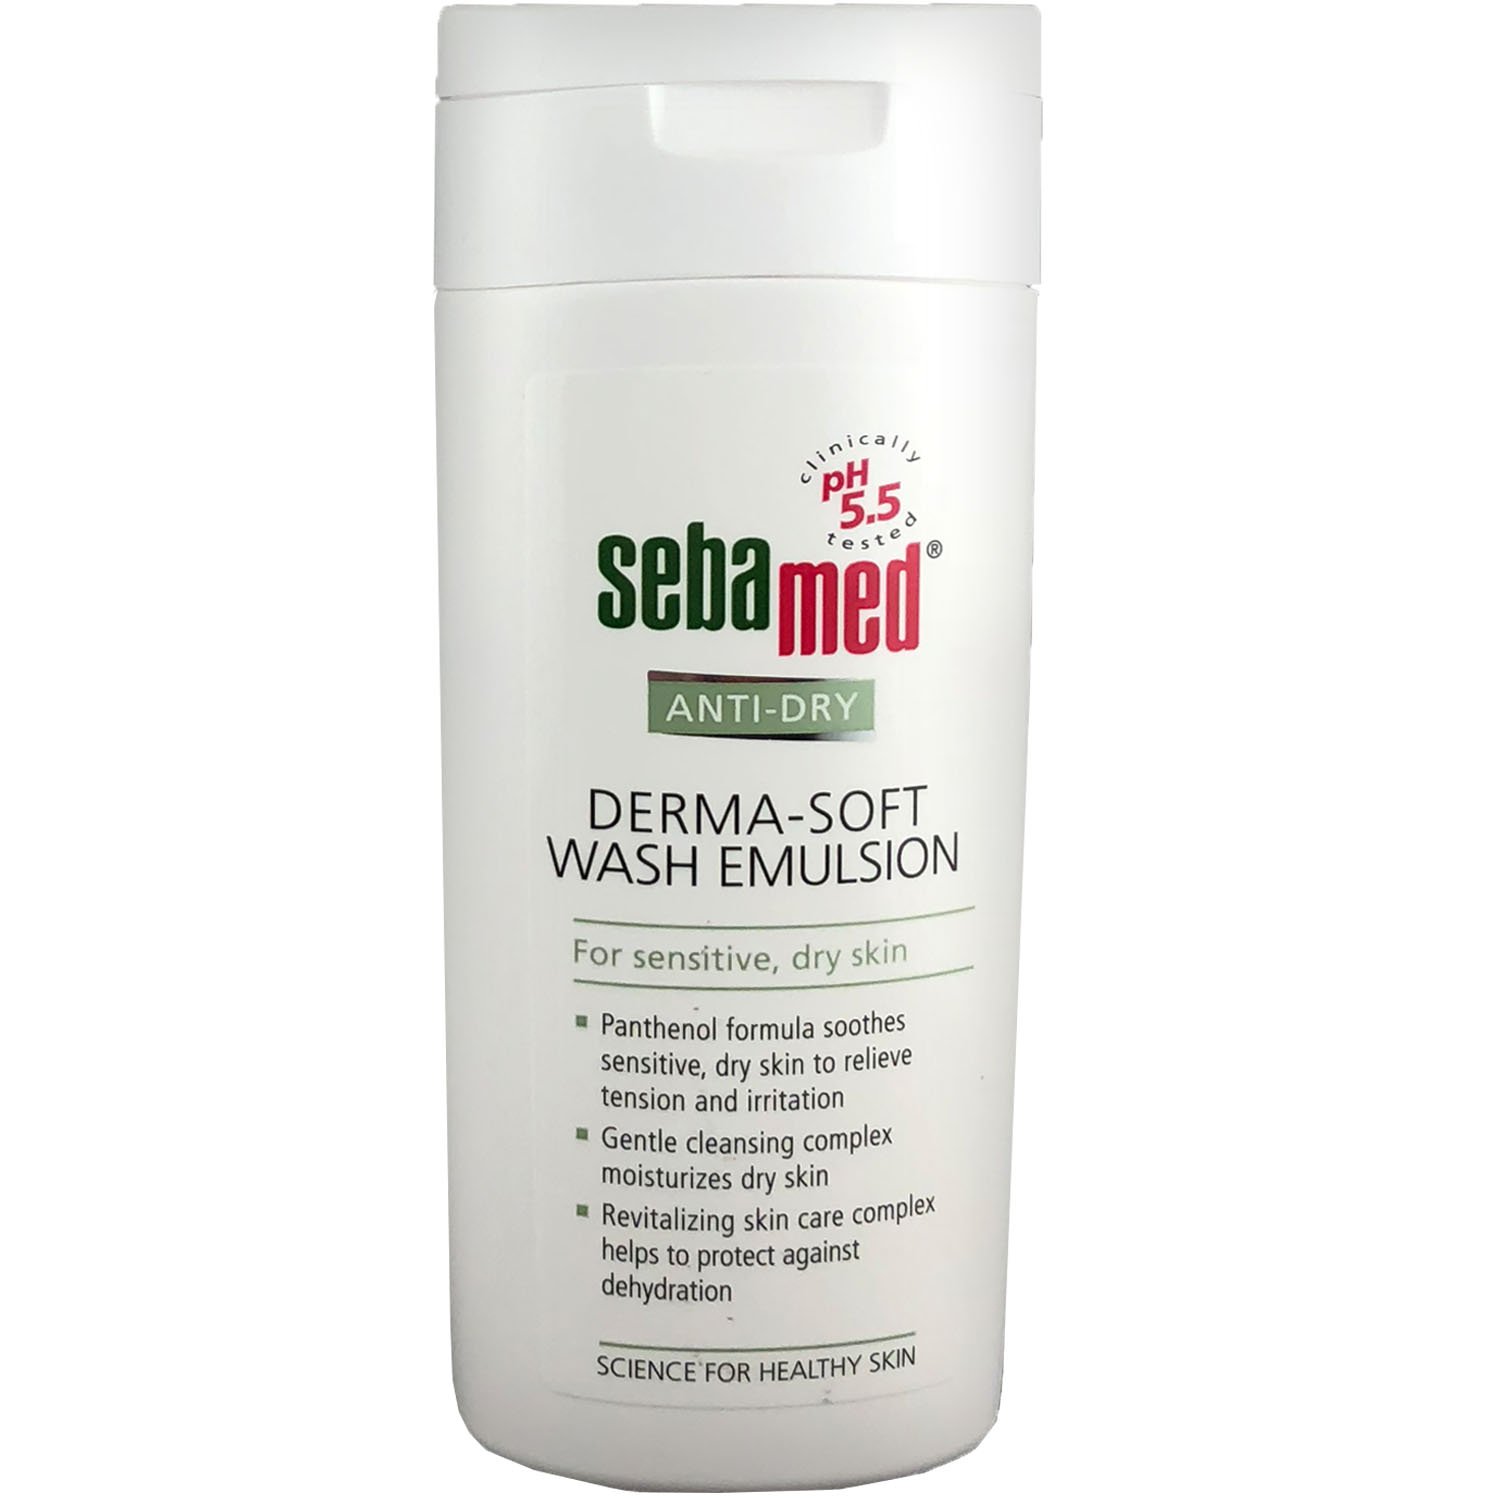 Емульсія для вмивання Sebamed Anti-Dry для сухої та чутливої шкіри, 200 мл - фото 1